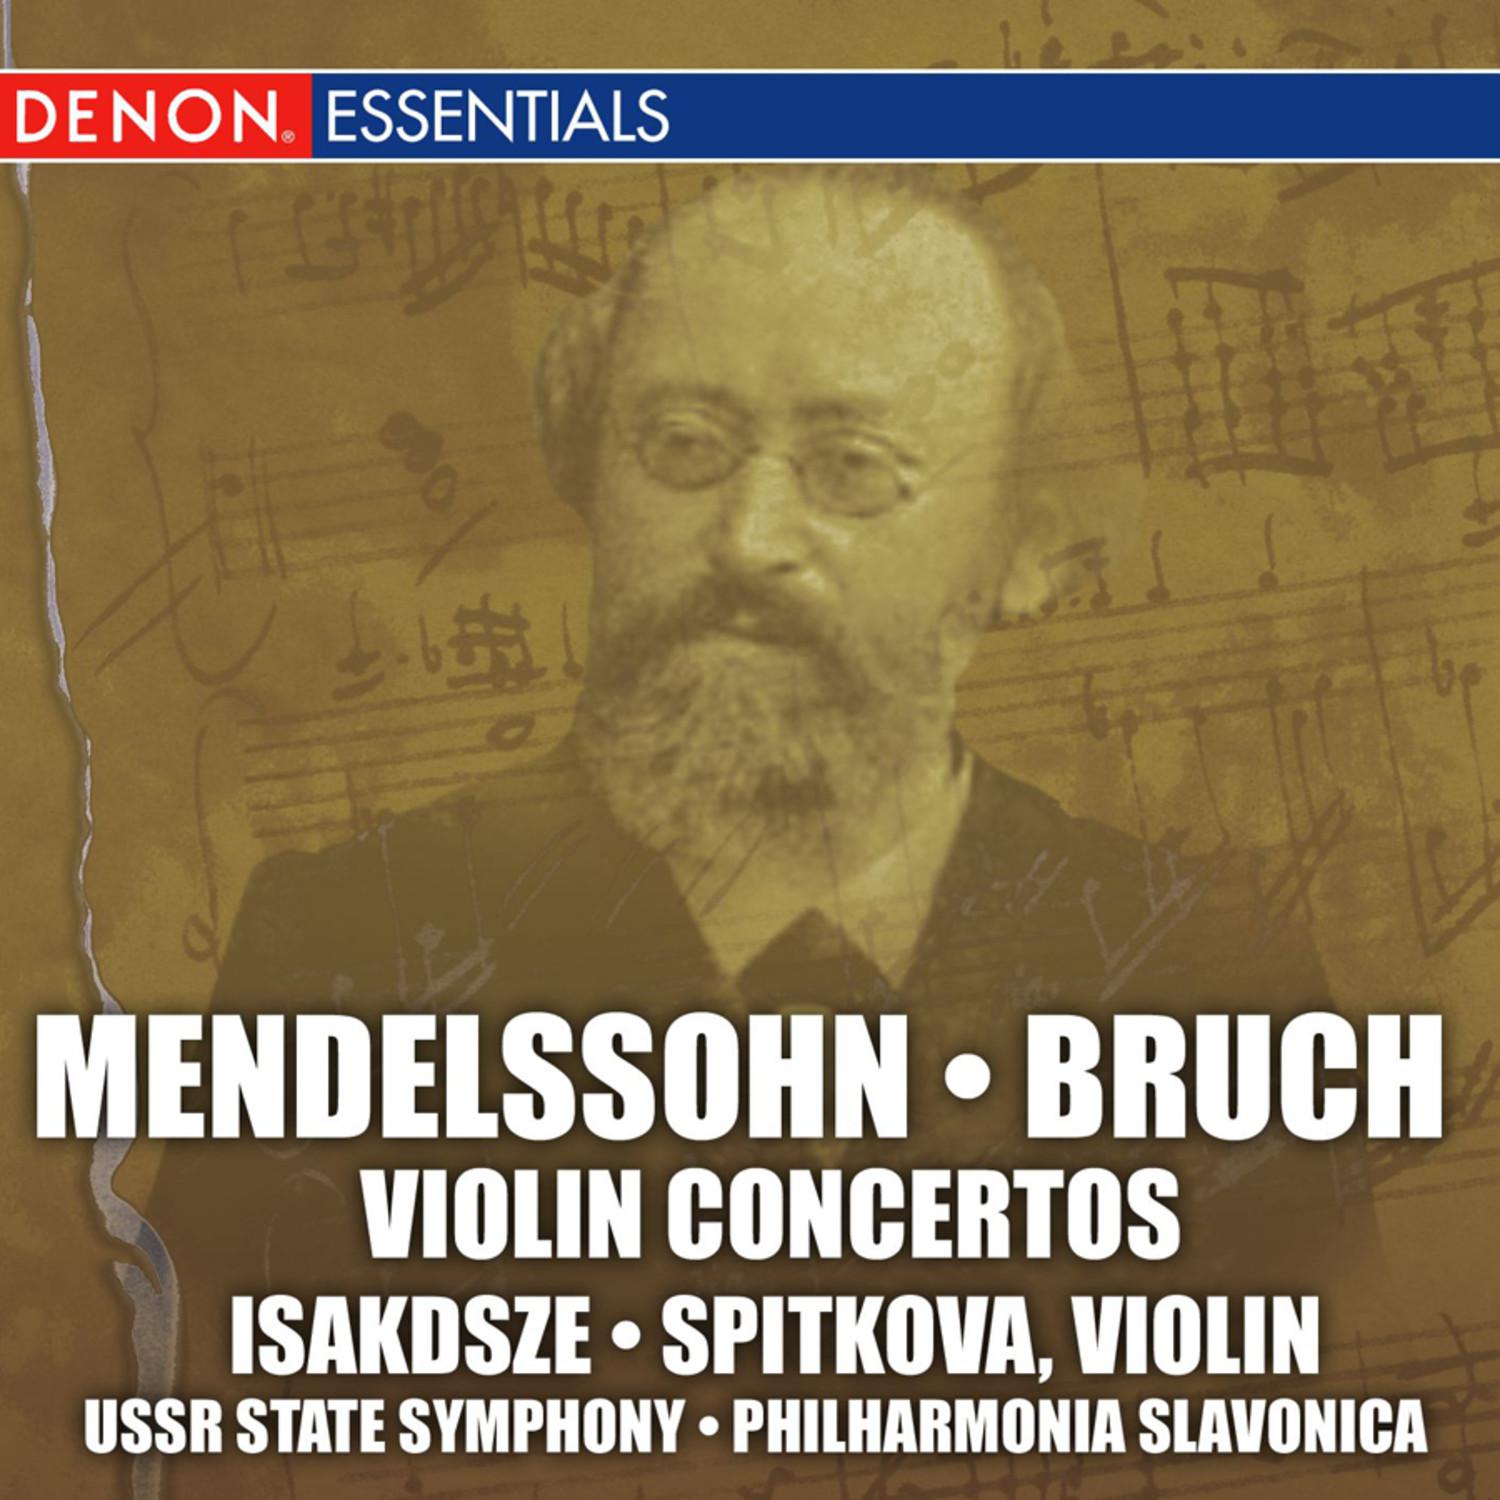 Concerto for Violin and Orchestra in E Minor, Op. 64: I. Allegro molto appassionato